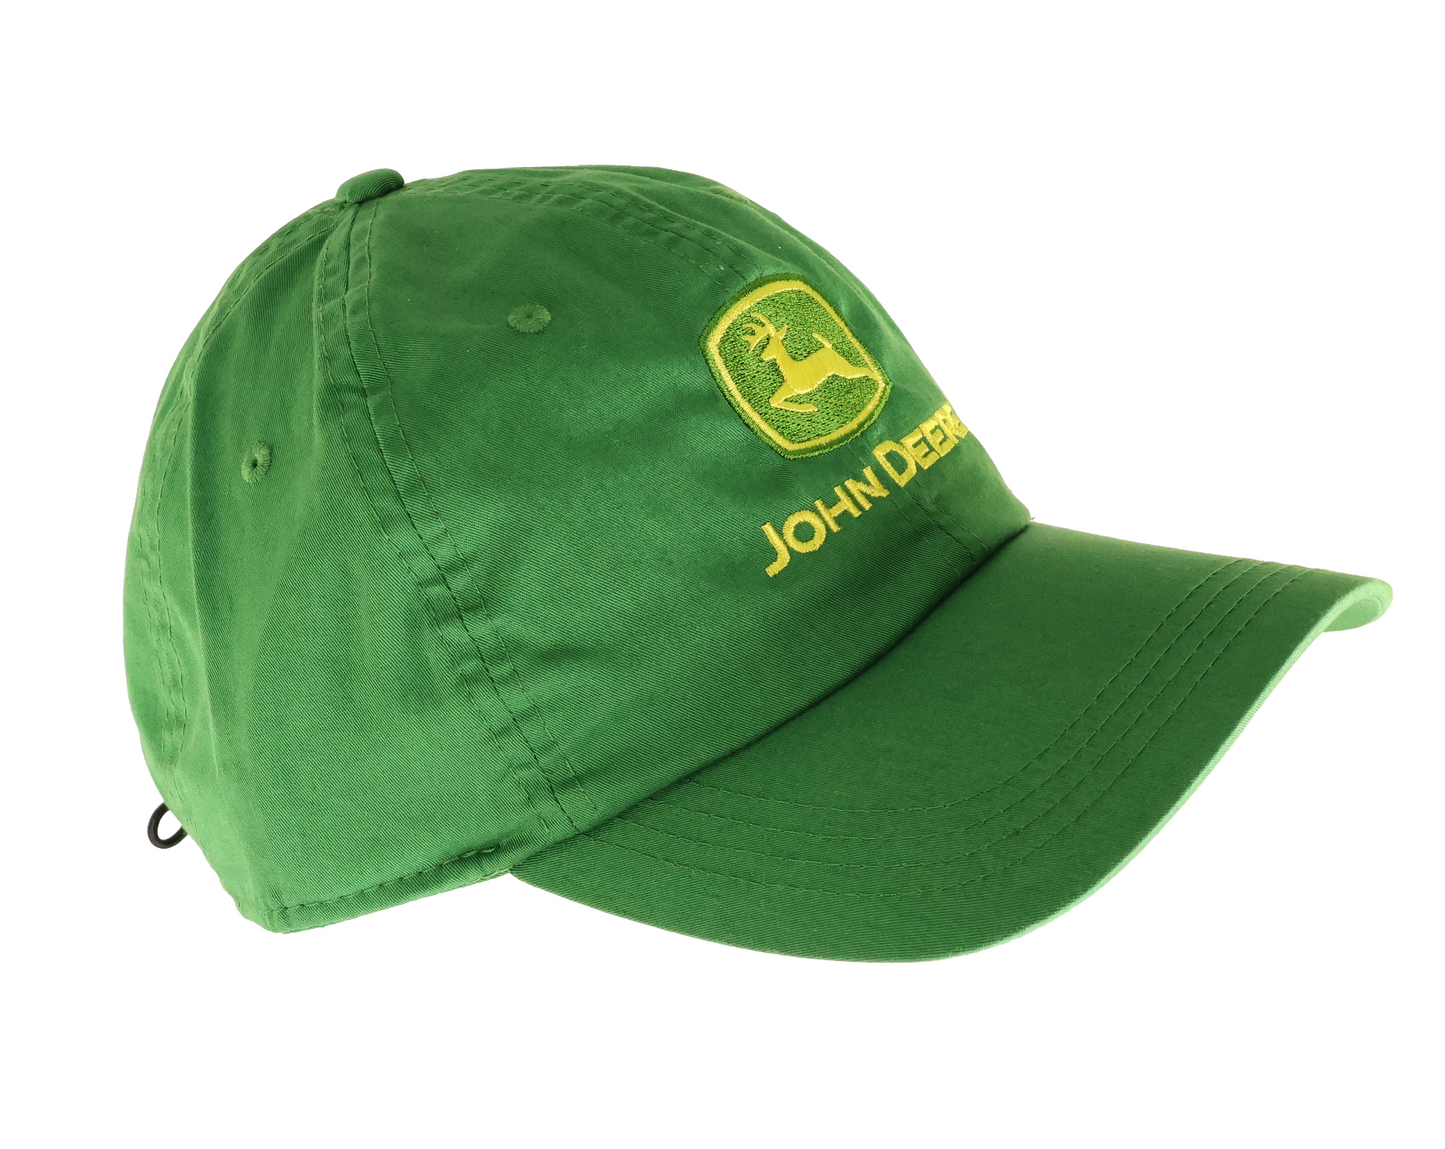 John Deere Green Ahead SHAWMUT Cap - LP78654